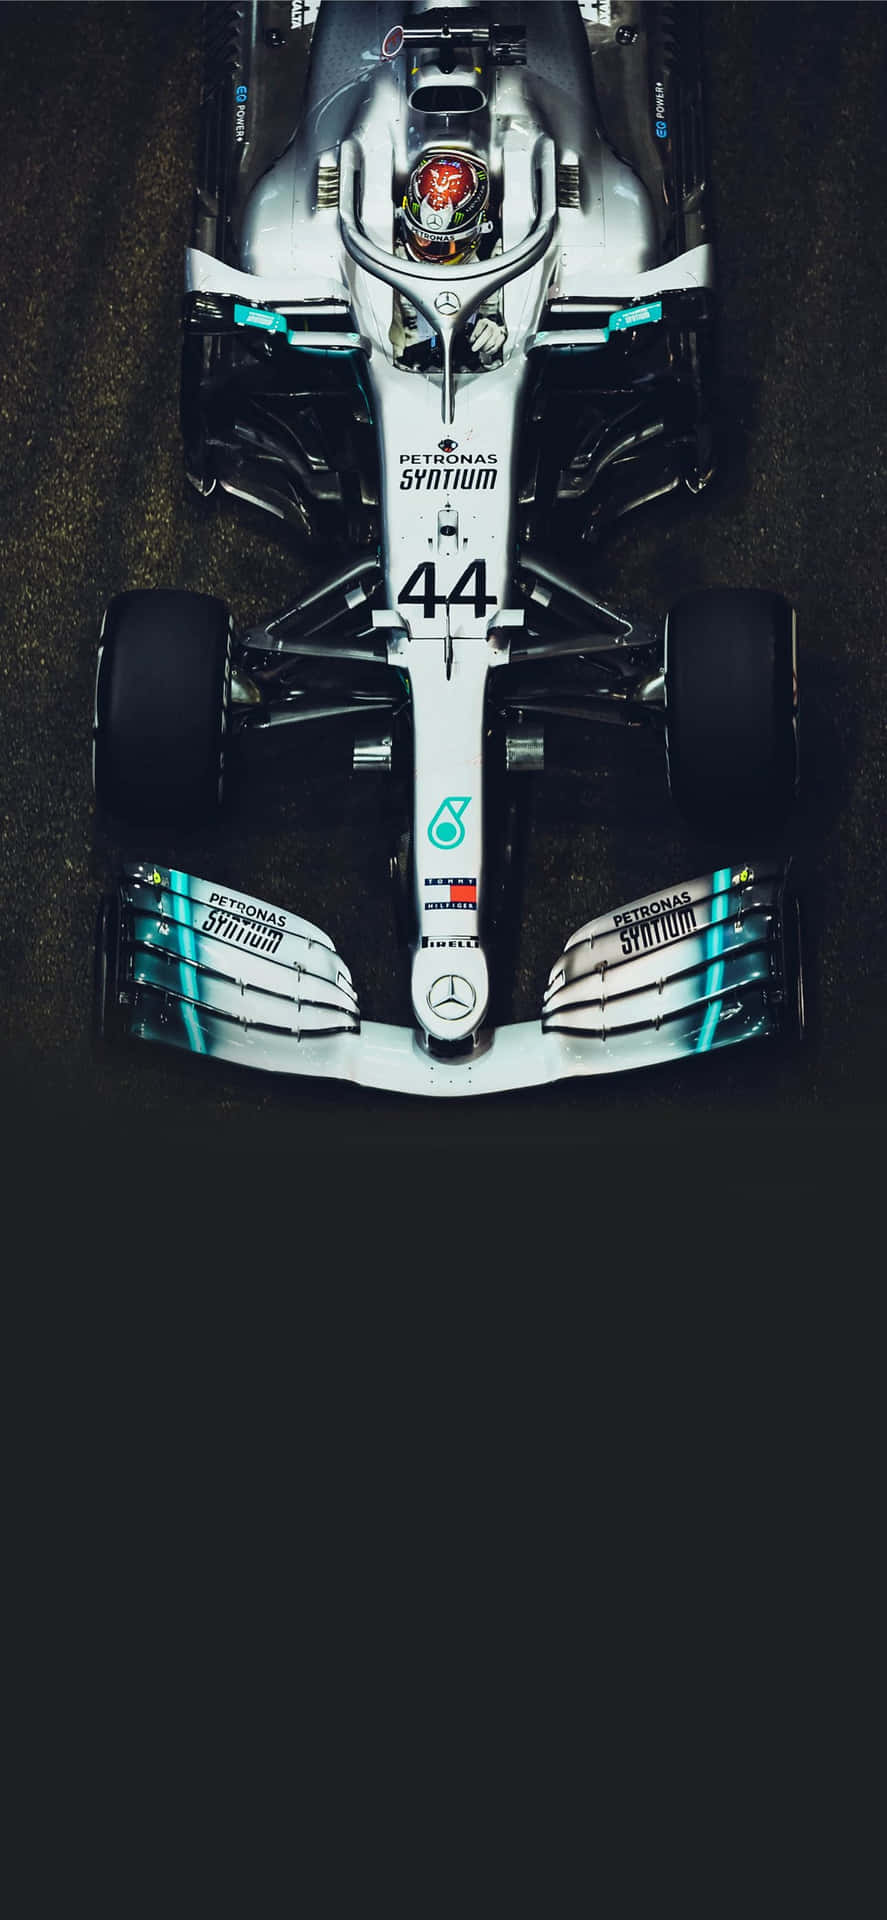 Fórmula 1 Iphone 1284 X 2778 Papel de Parede